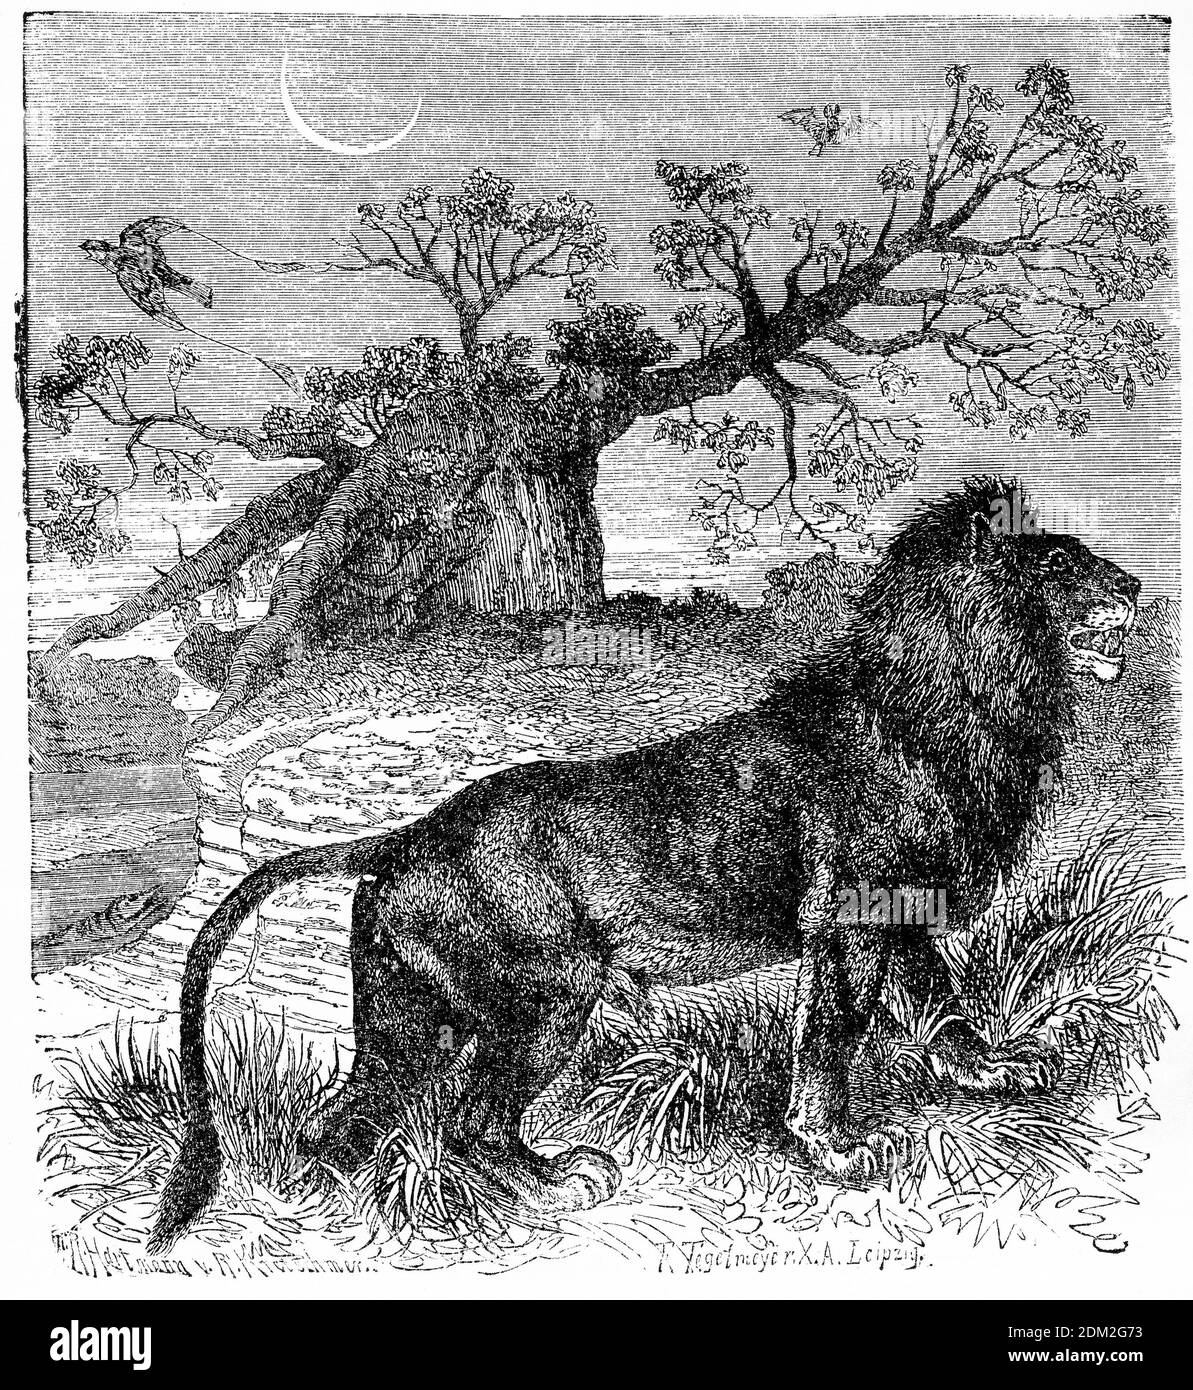 Gravure d'une chasse au lion africain dans les plans de l'Afrique Banque D'Images